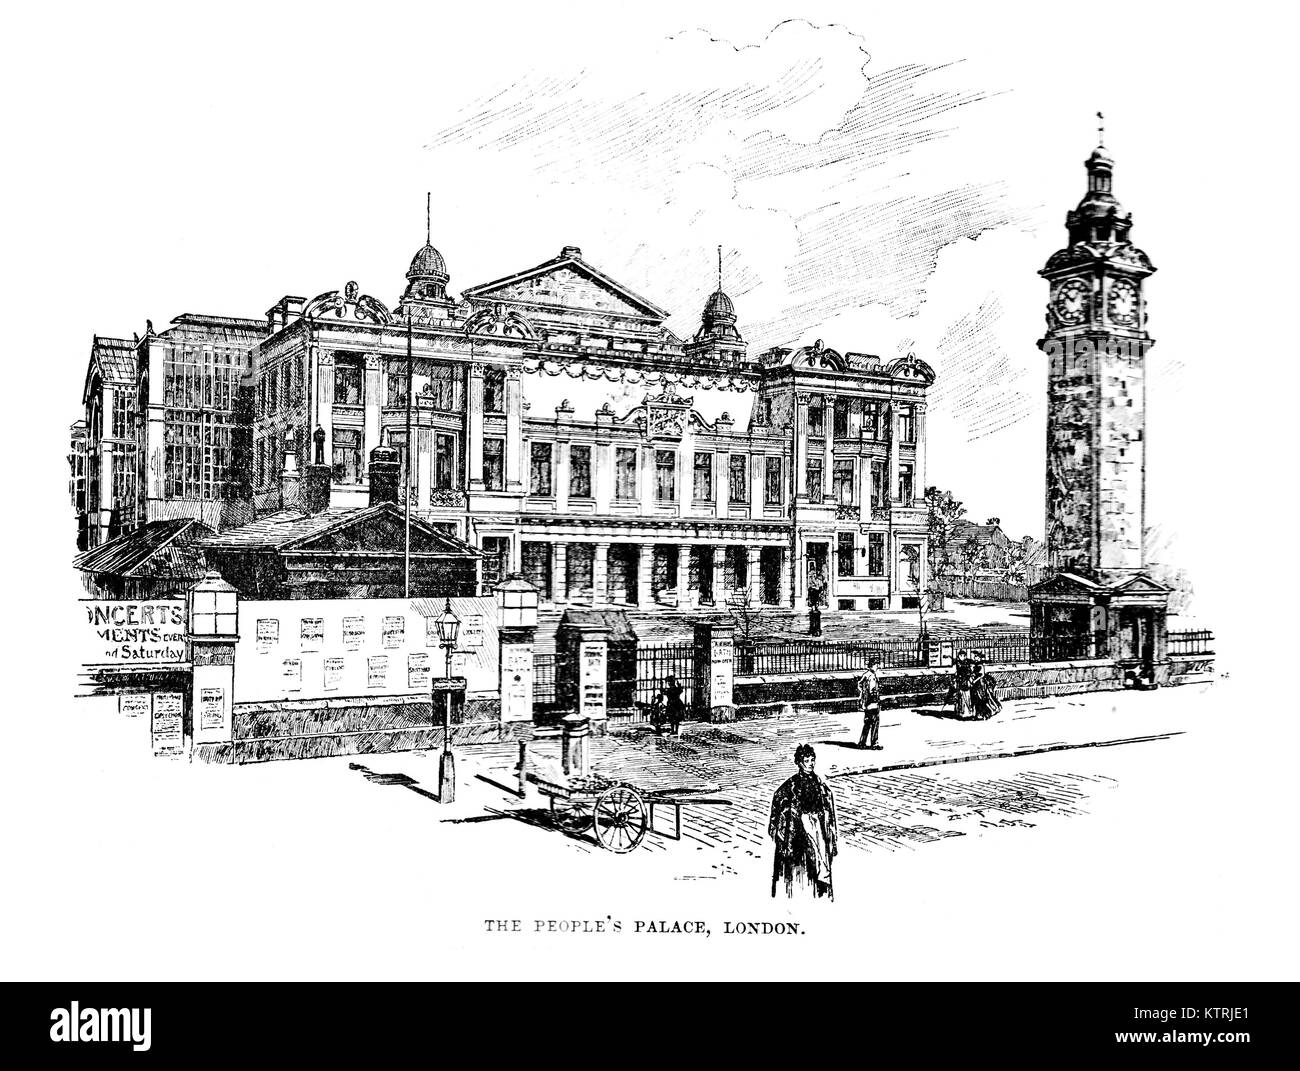 Le Palais du Peuple, maintenant le bâtiment de la Reine (Queen Mary University de Londres, Whitechapel, Londres, 19e siècle Illustration Banque D'Images